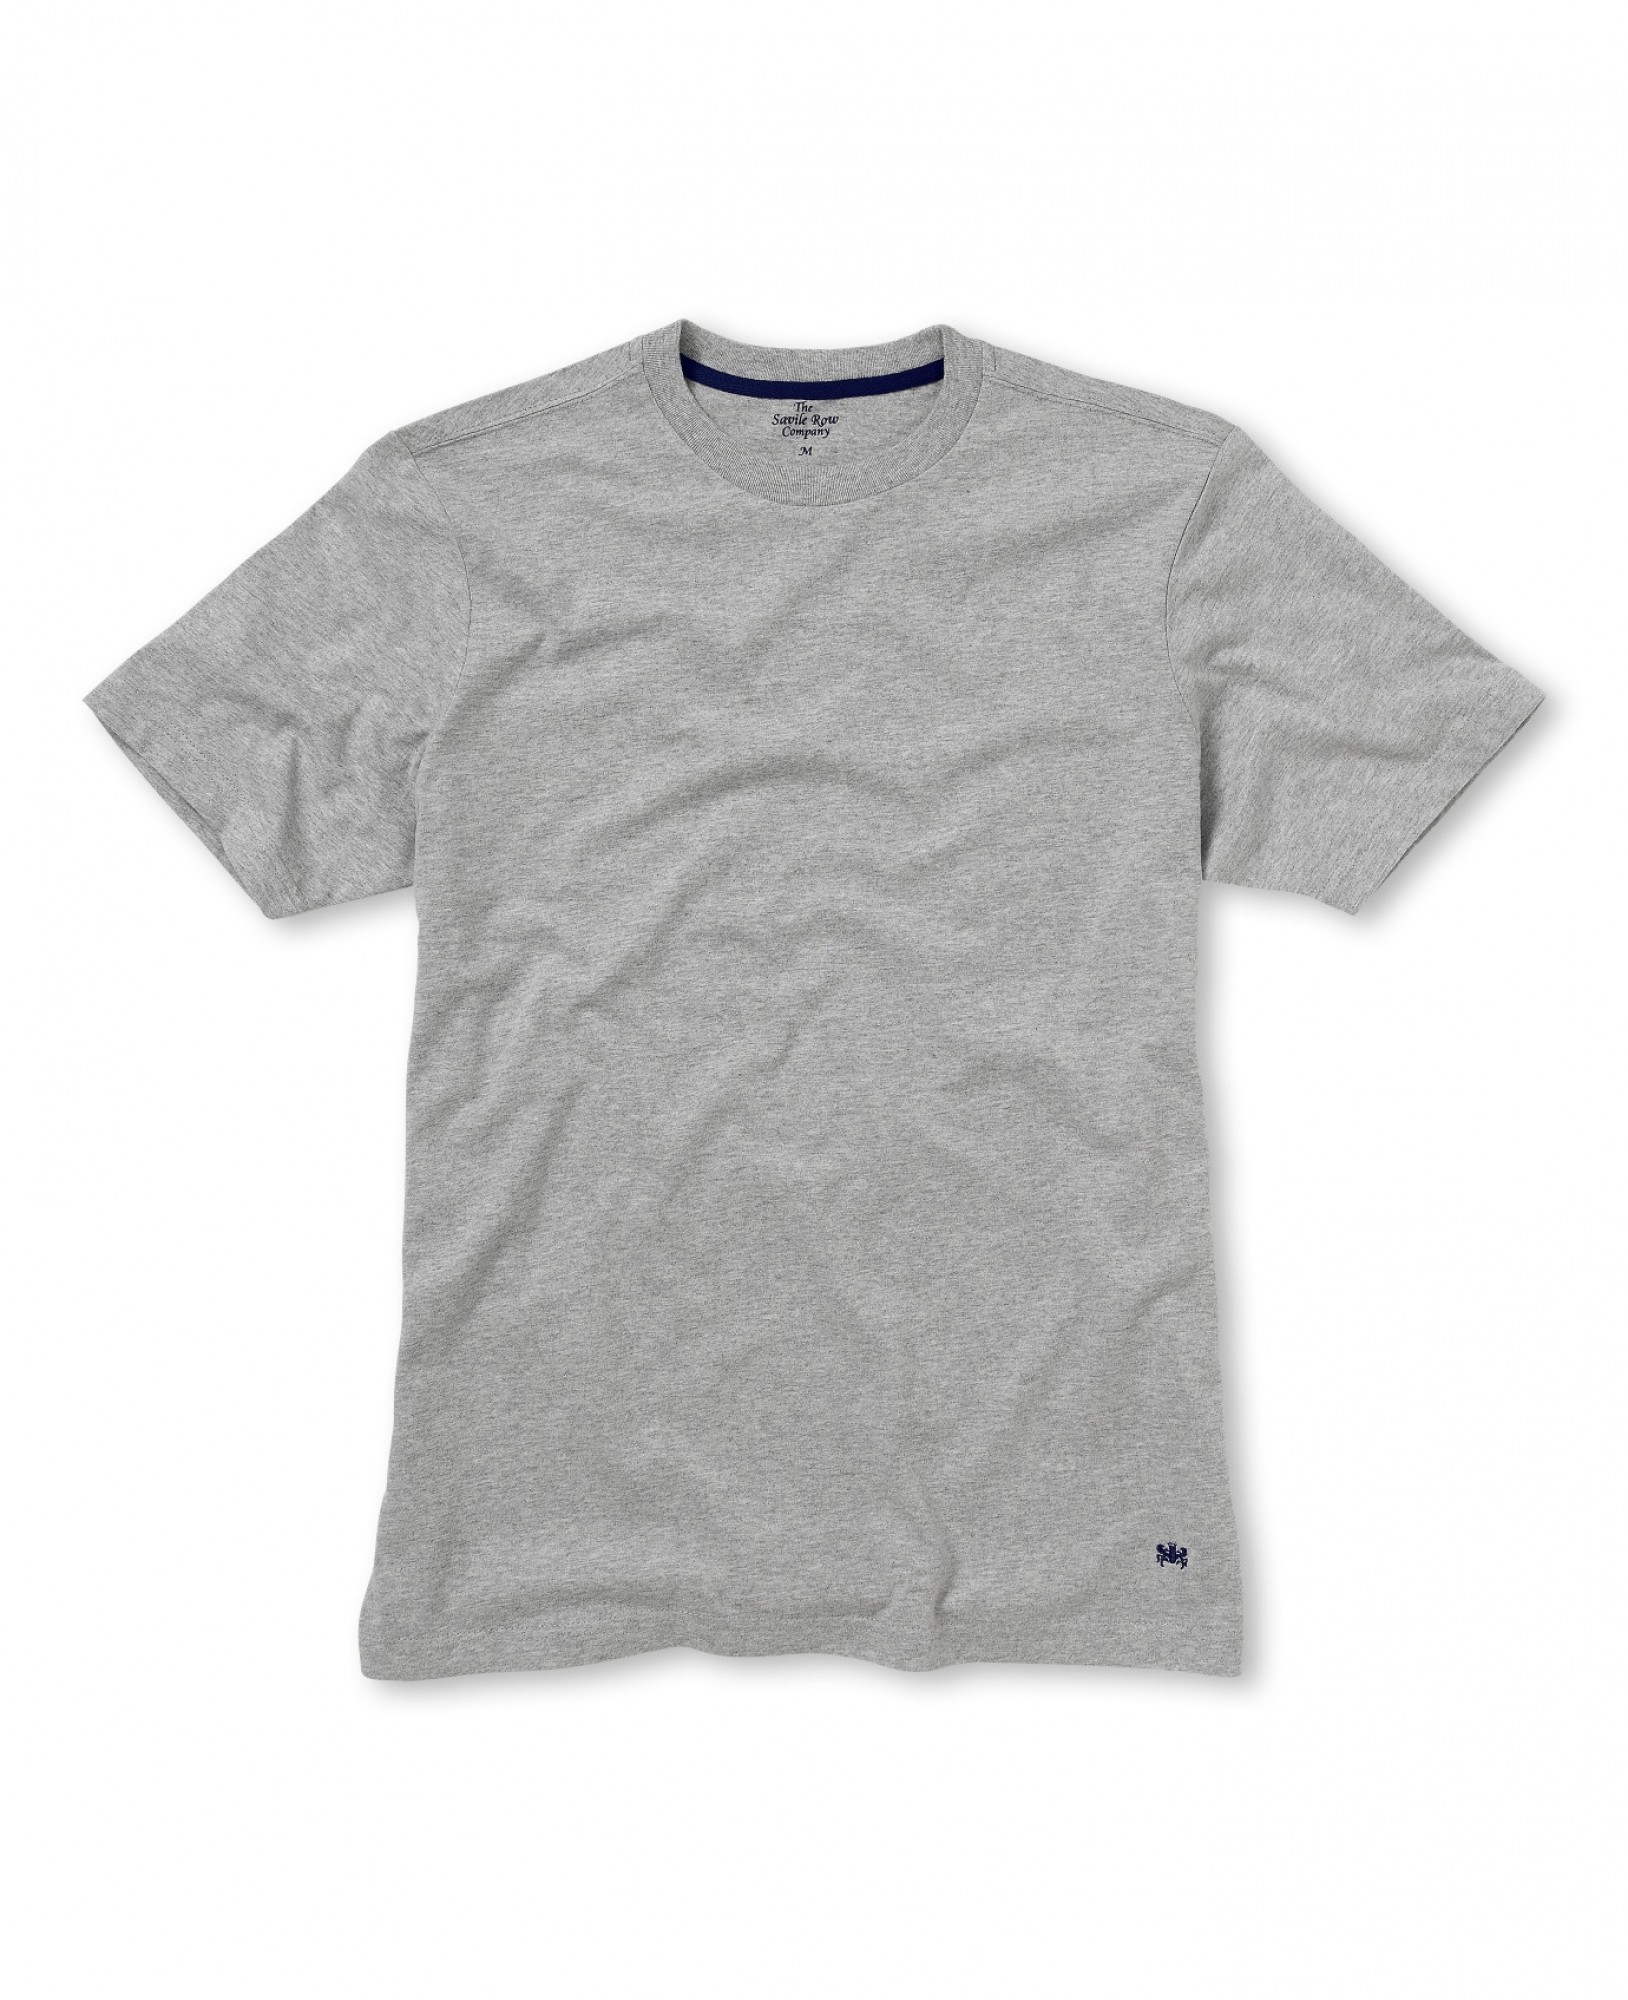 Savile Row Co. Grey Short Sleeve T-Shirt XXXL